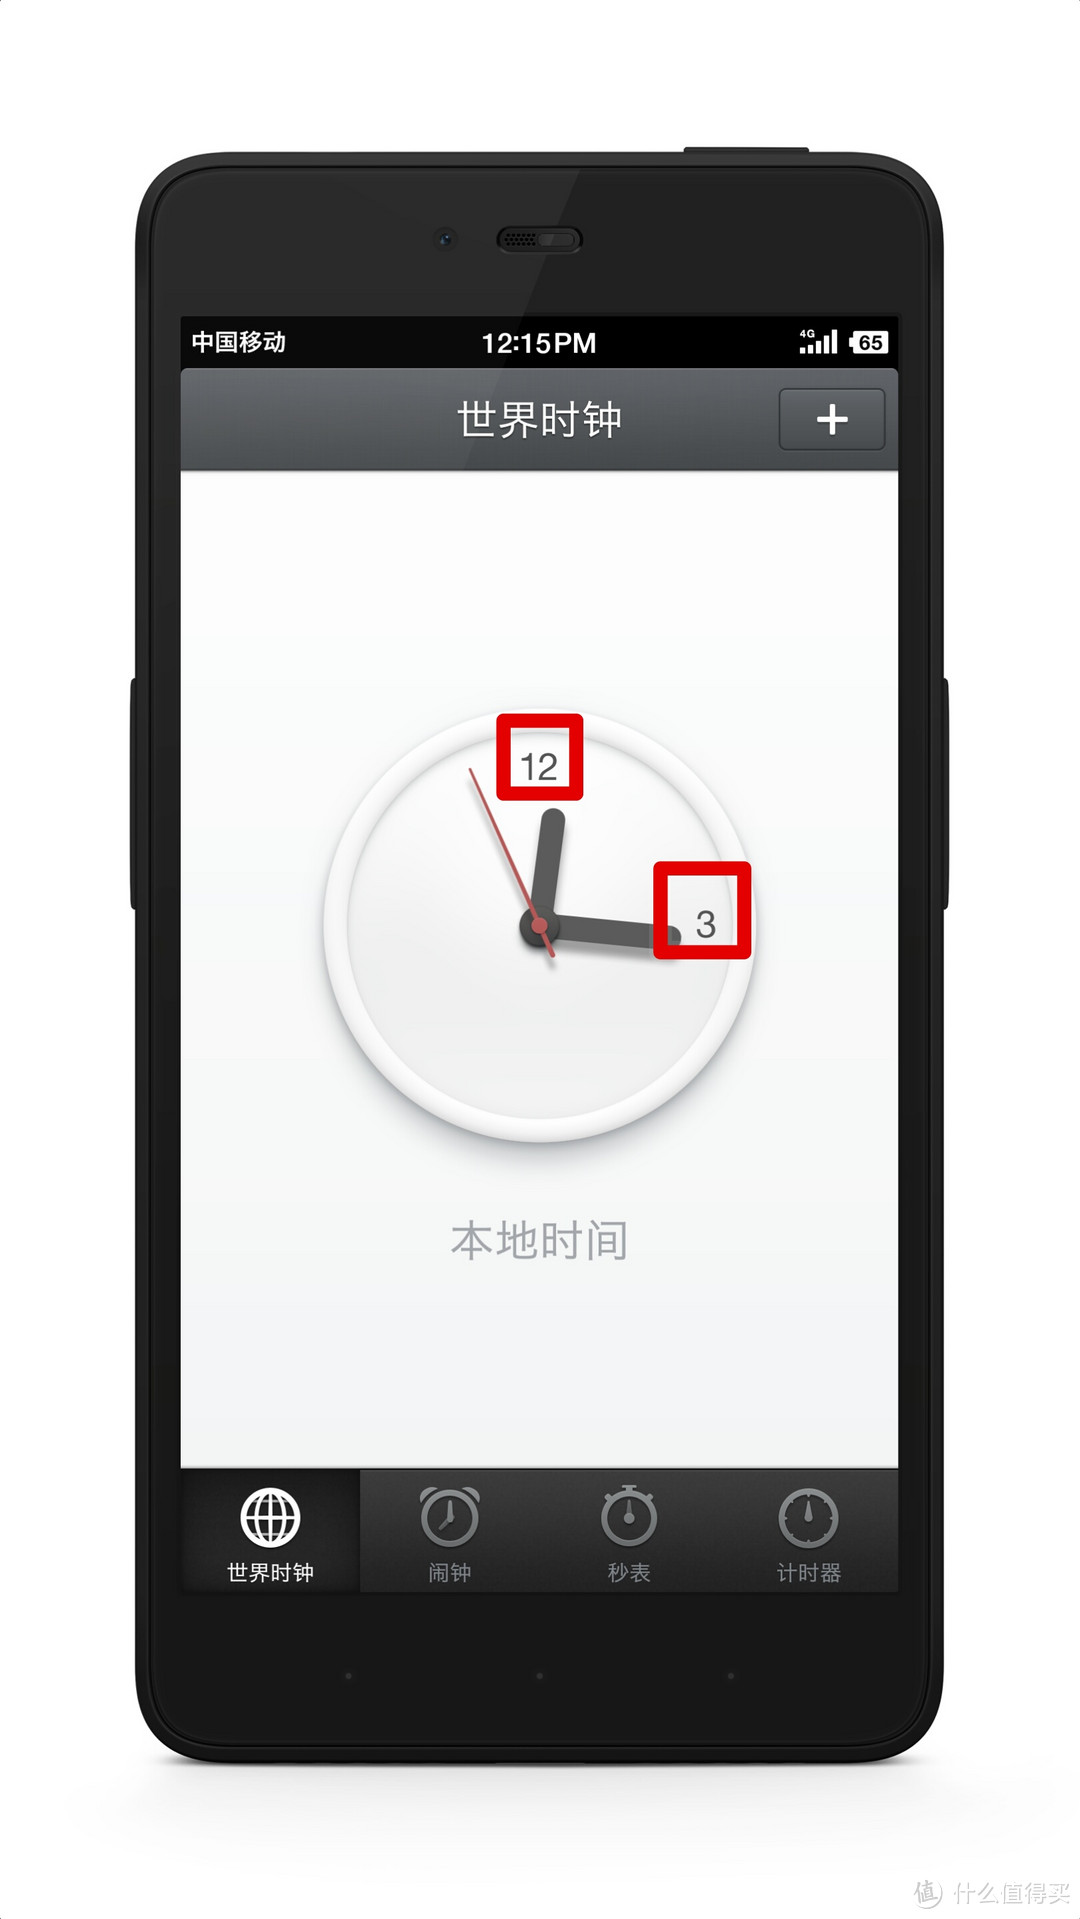 坚果手机的Smartisan OS 2.5 简评